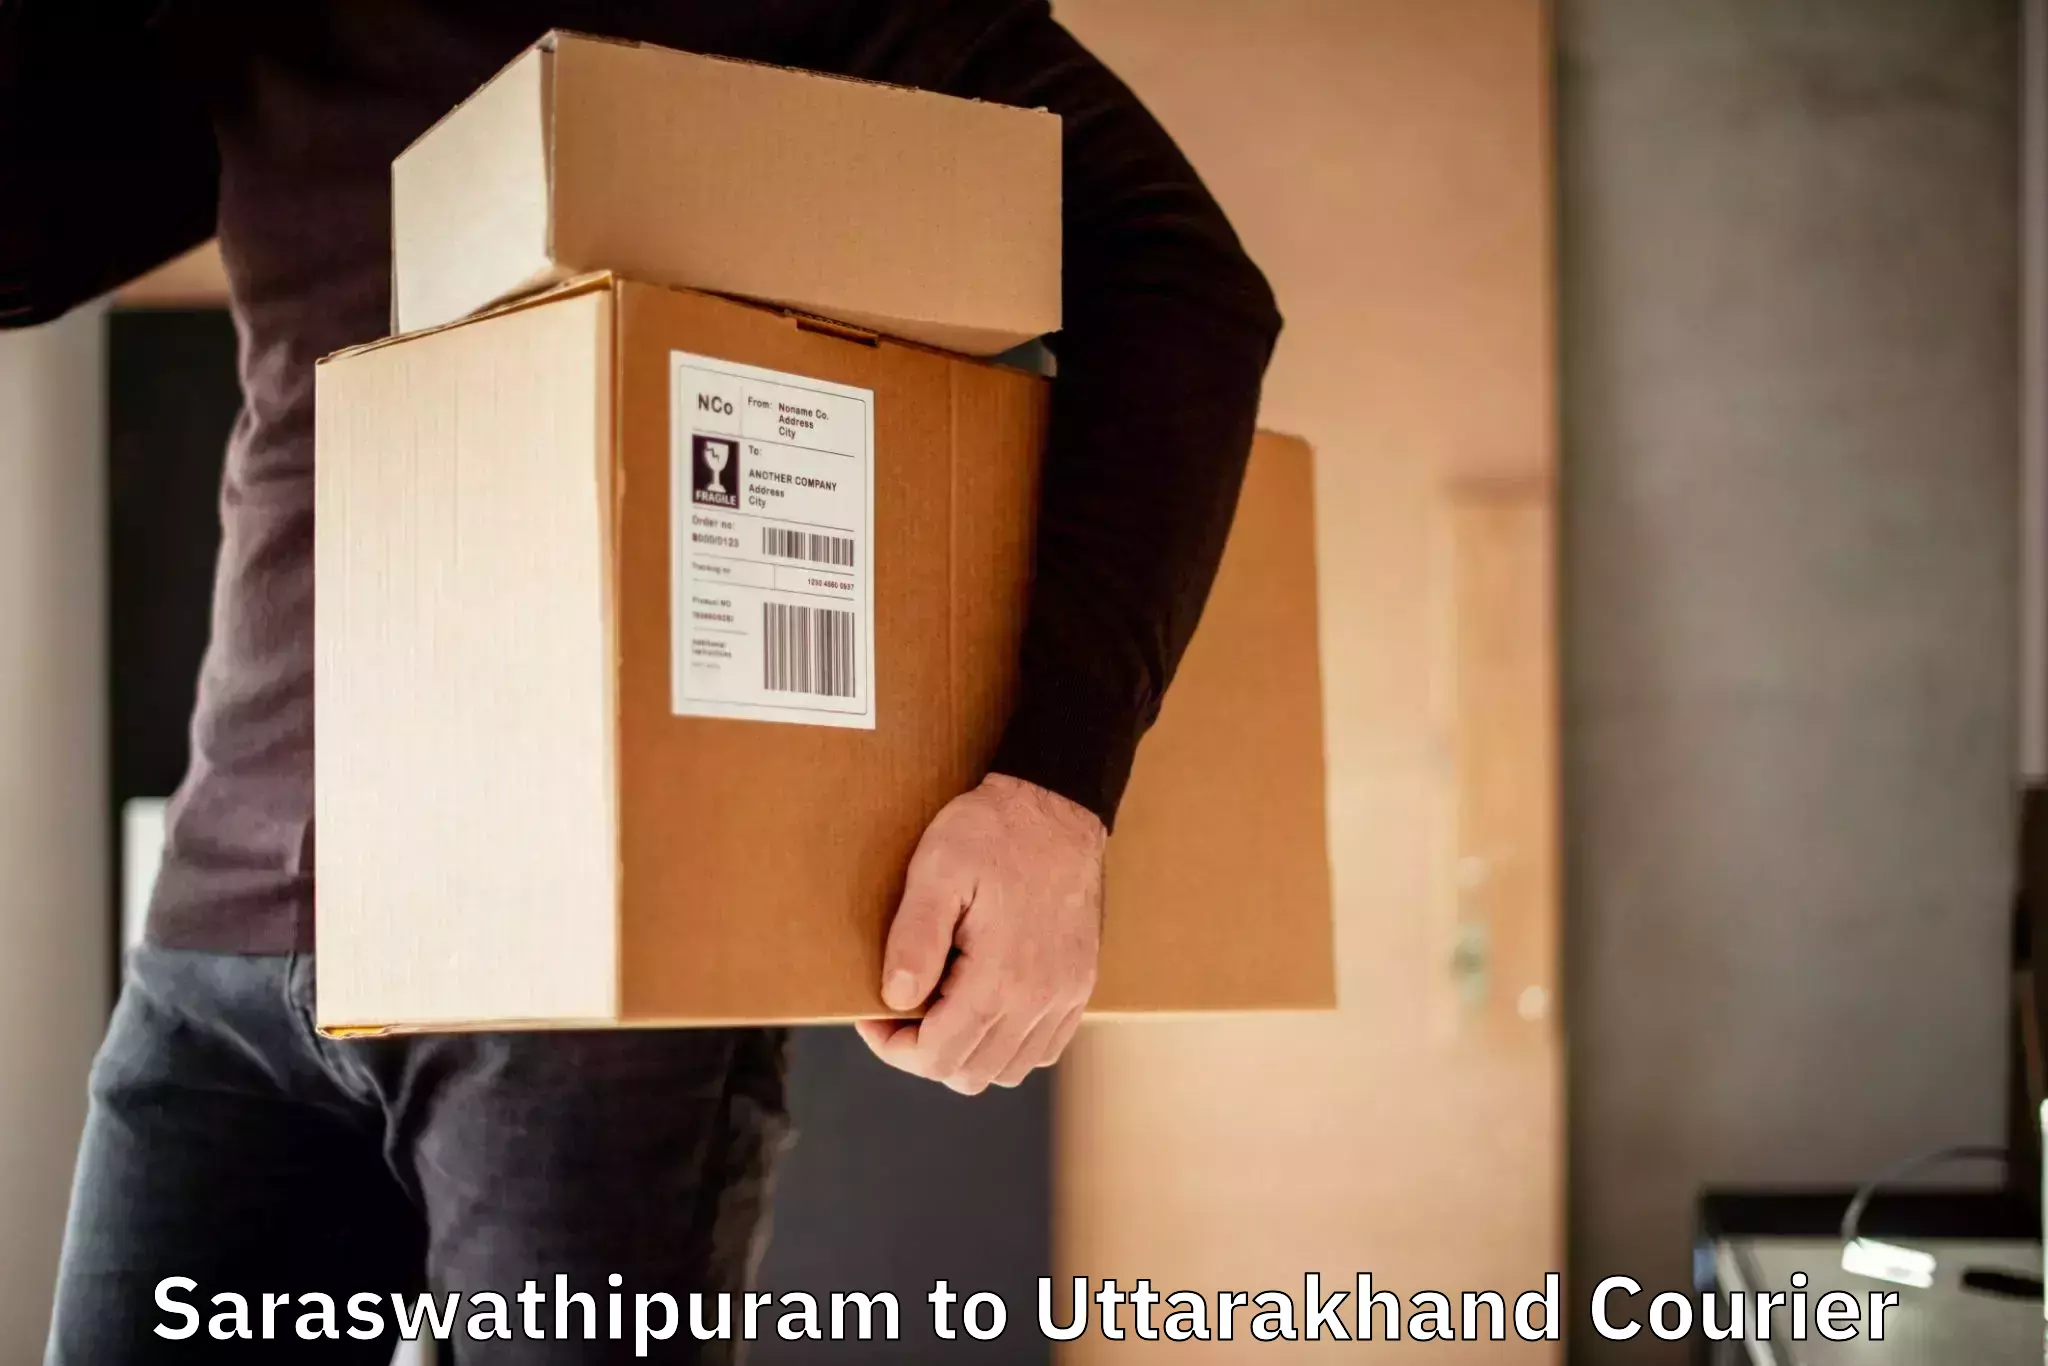 Online package tracking Saraswathipuram to Bhagwanpur